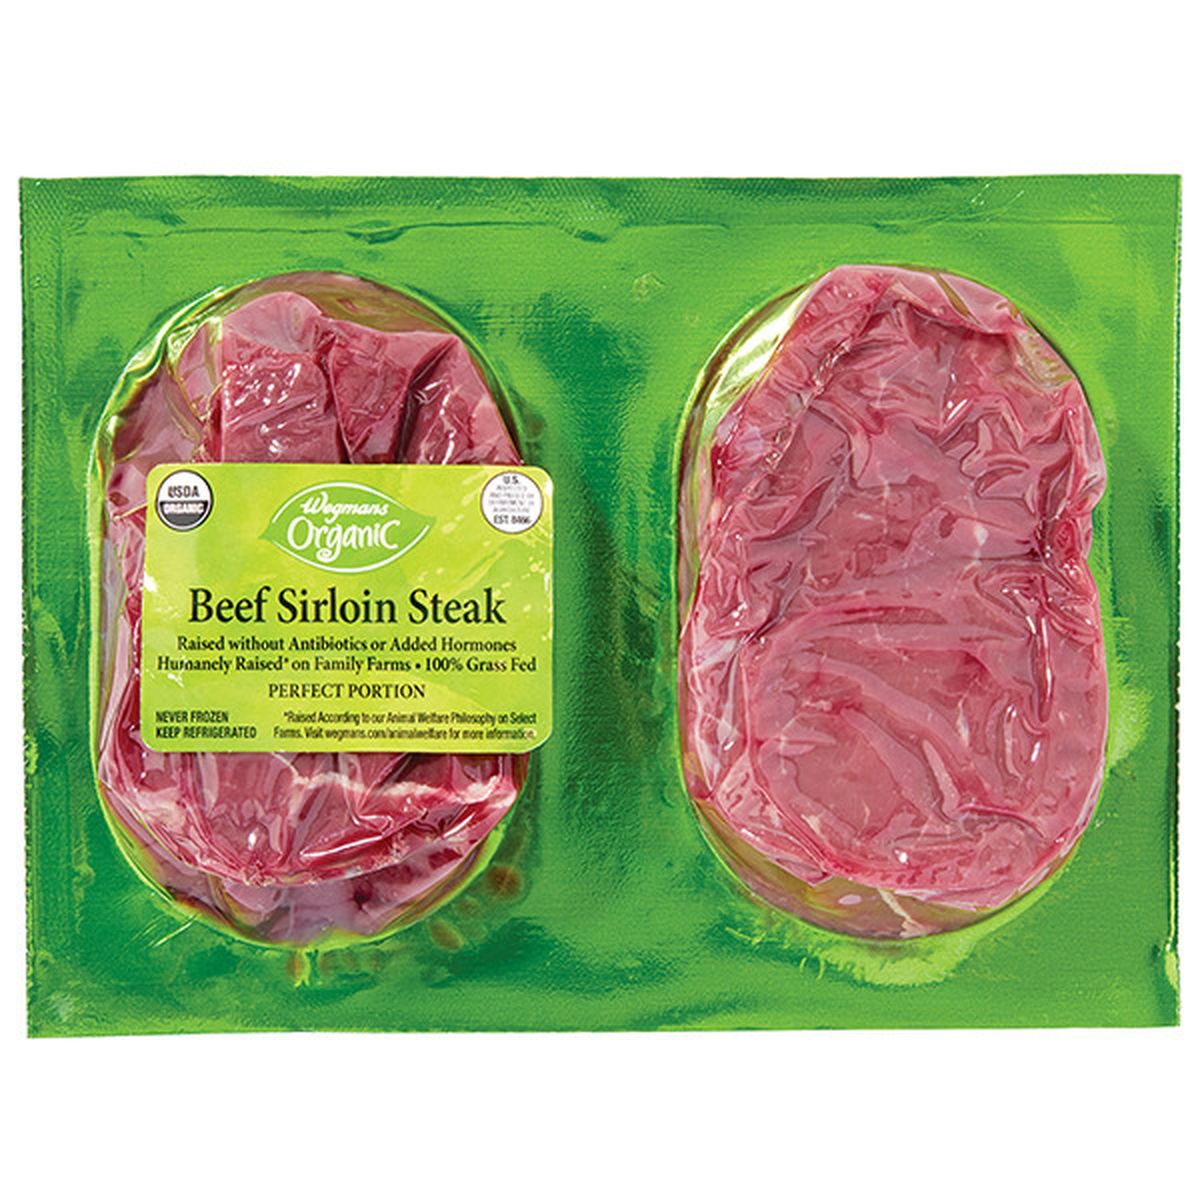 Calories in Wegmans Organic Perfect Portion Grass Fed Sirloin Steak